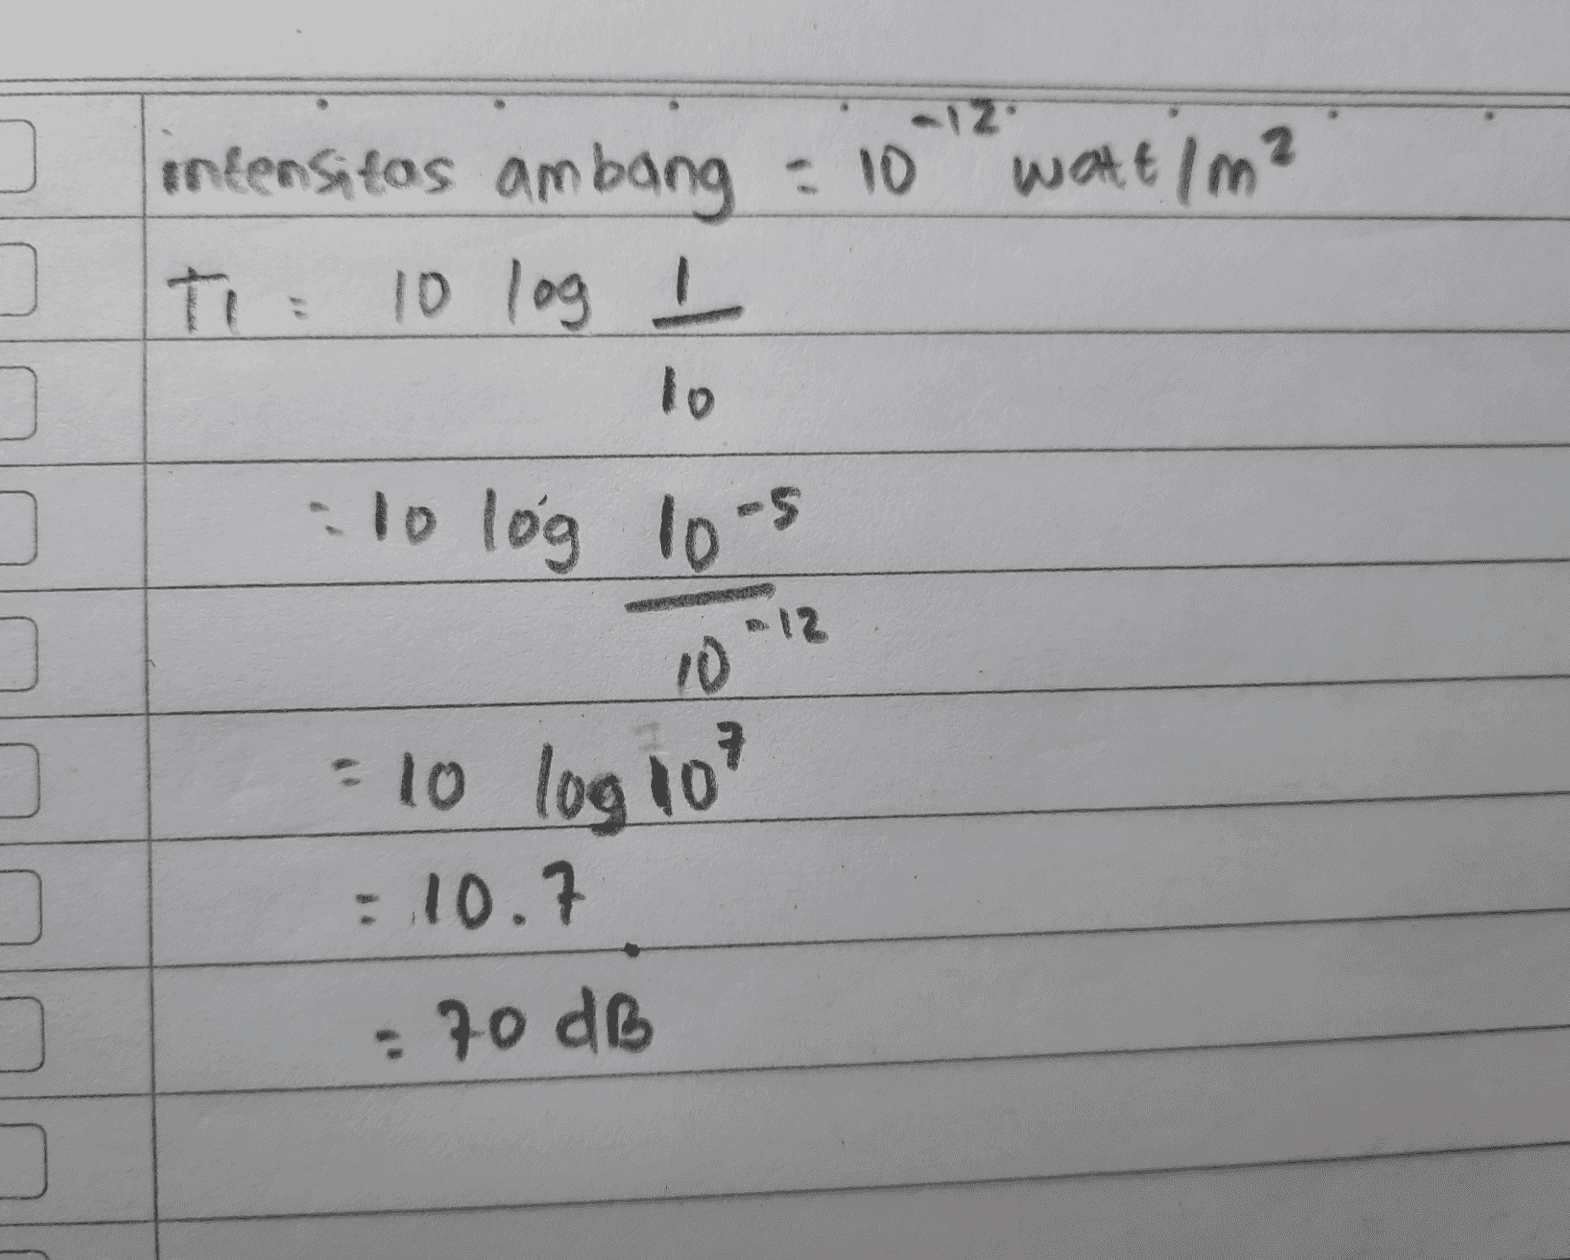 12 intensitas ambang = 10 watt / m² T: 10 log I to 10 log 10-5 12 10 =10 log 10 : 10.7 : 70 dB 